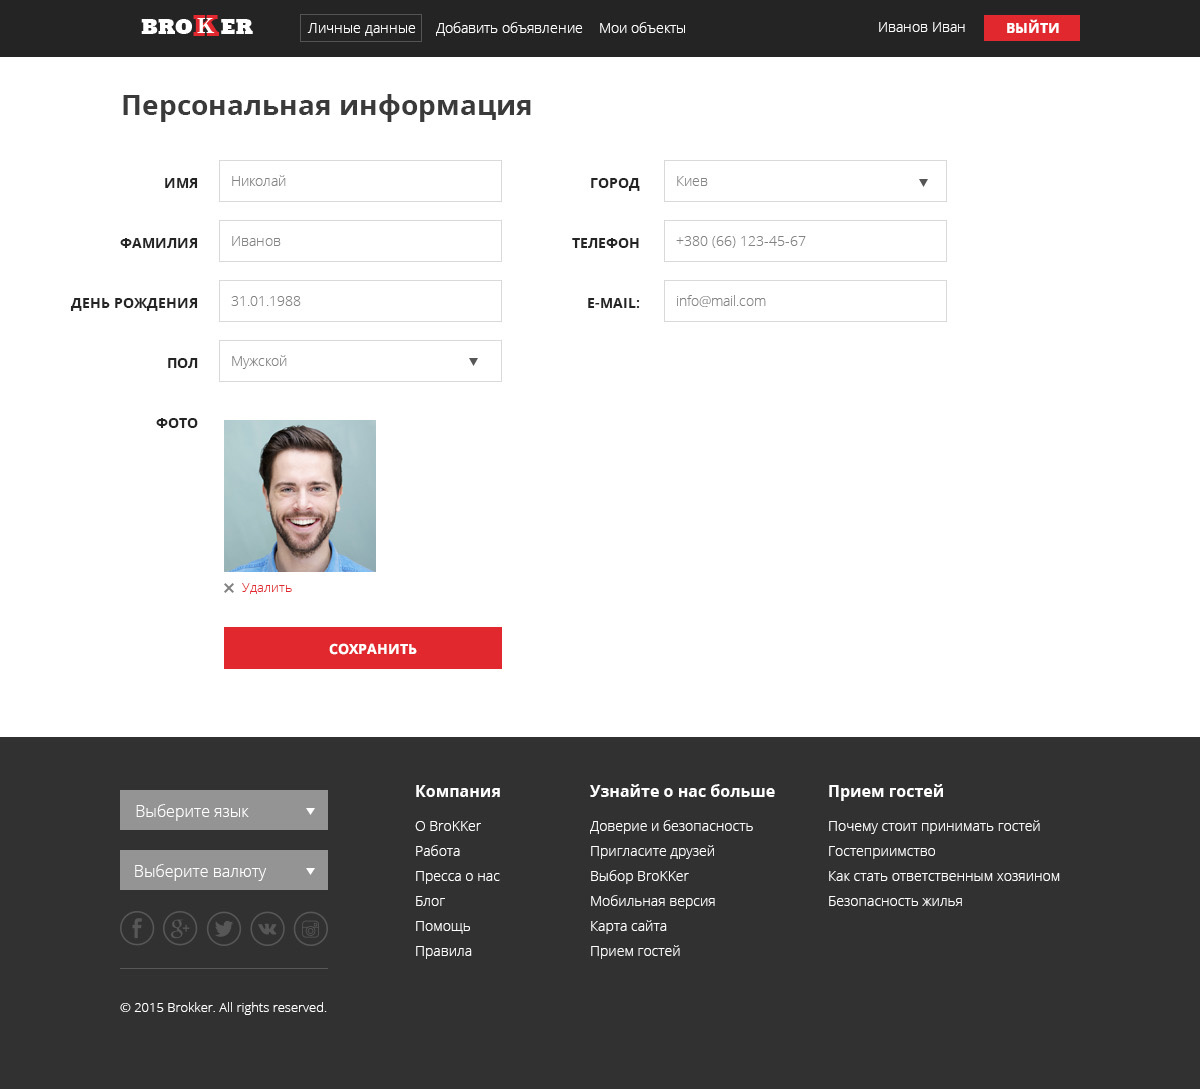 Personal data page design of Brokker website